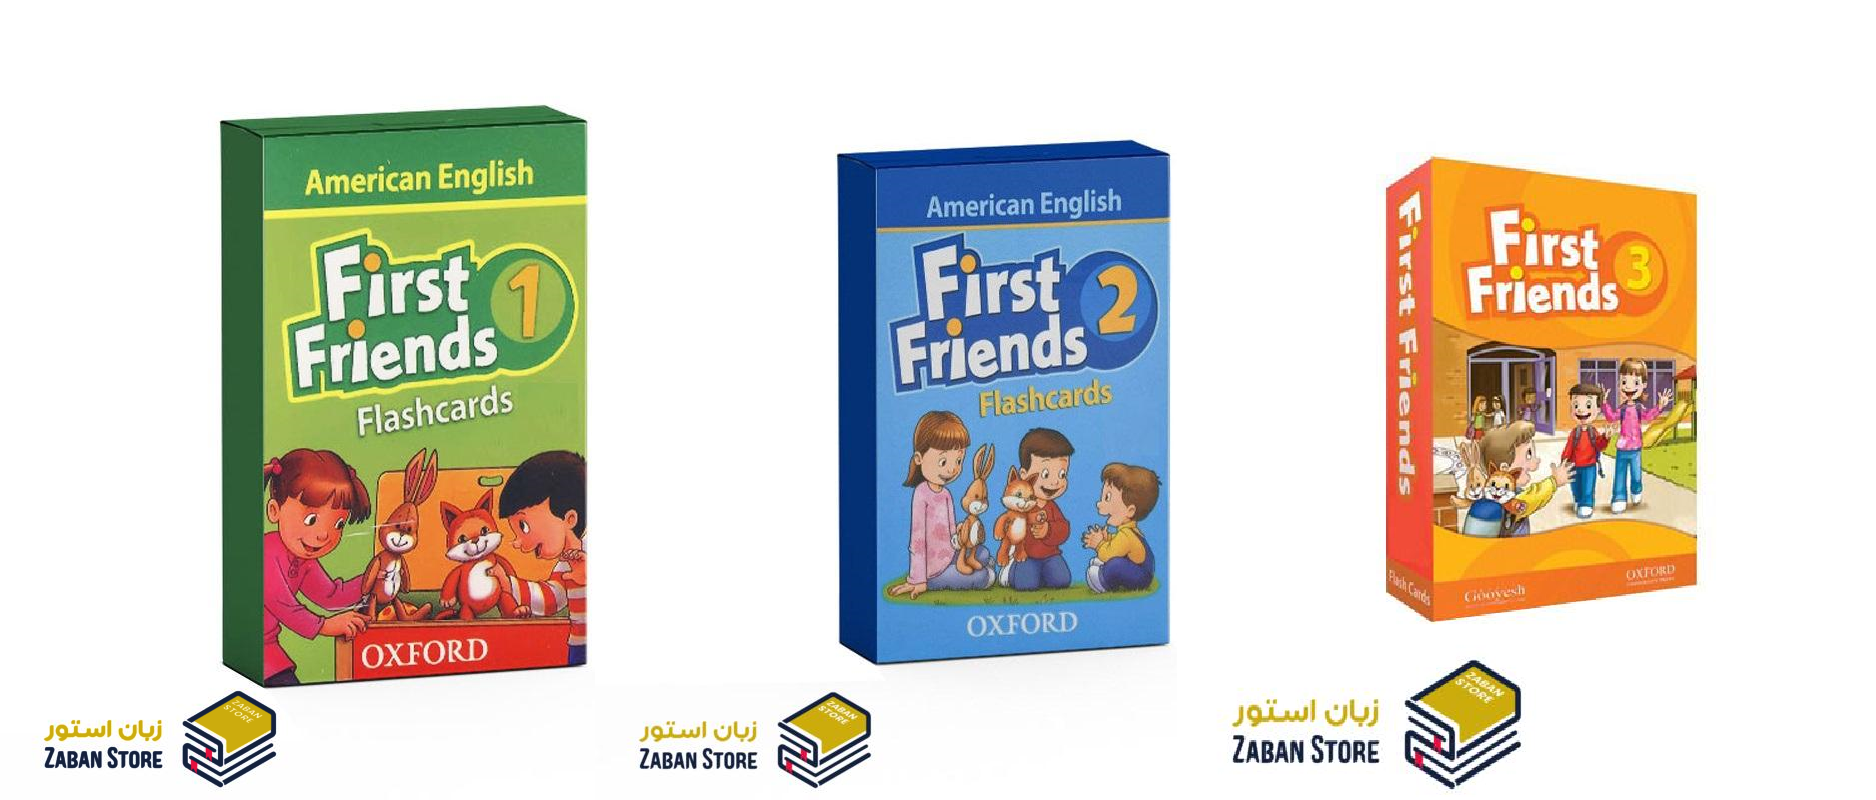 خرید کتاب زبان | کتاب زبان اصلی | First Friends American English Flashcards | فلش کارت فرست فرندز امریکن